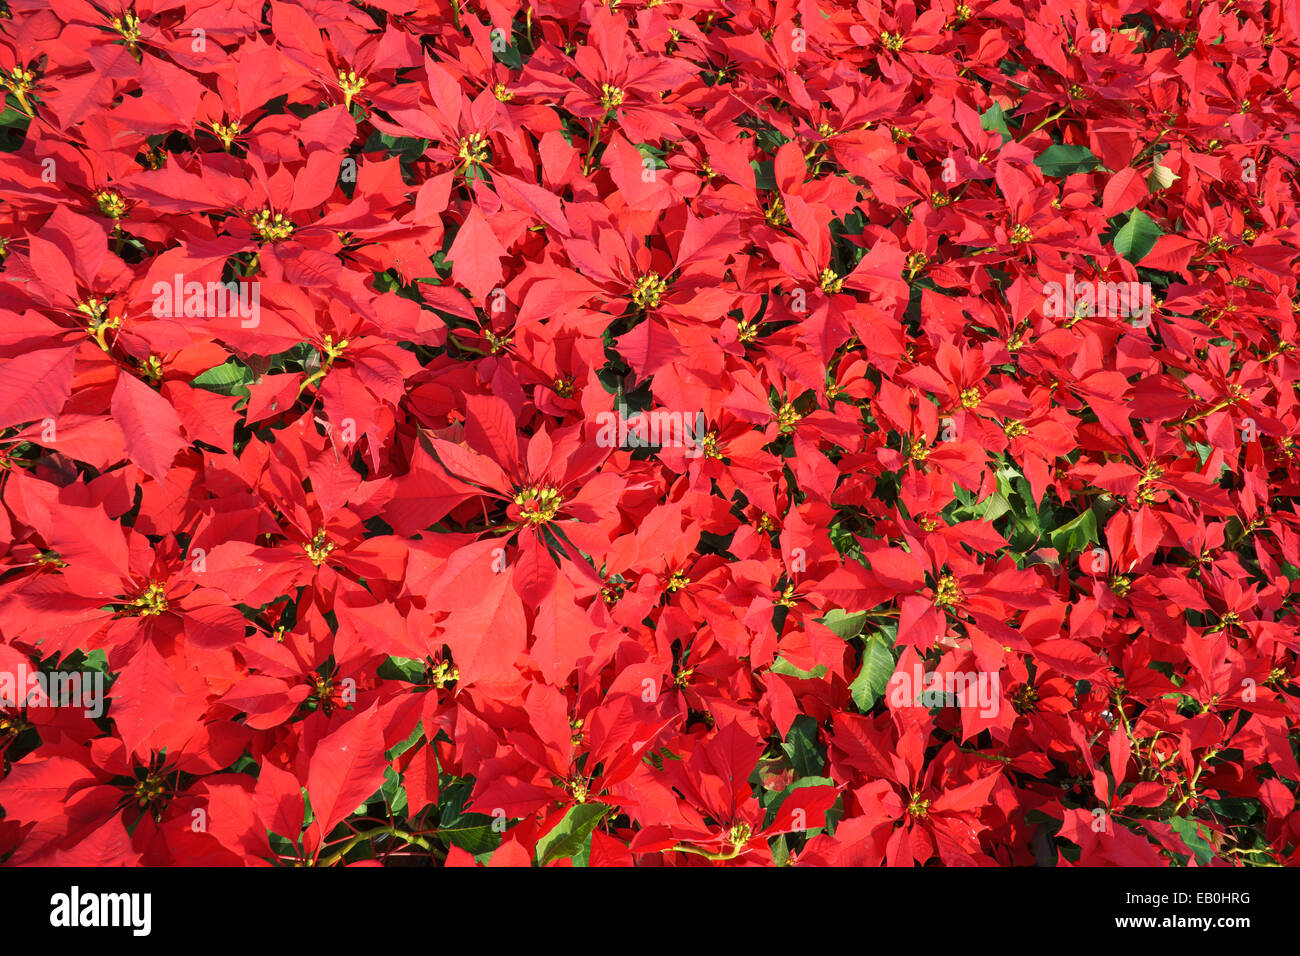 Couleur rouge vif dans un champ de fleurs poinsetia Banque D'Images